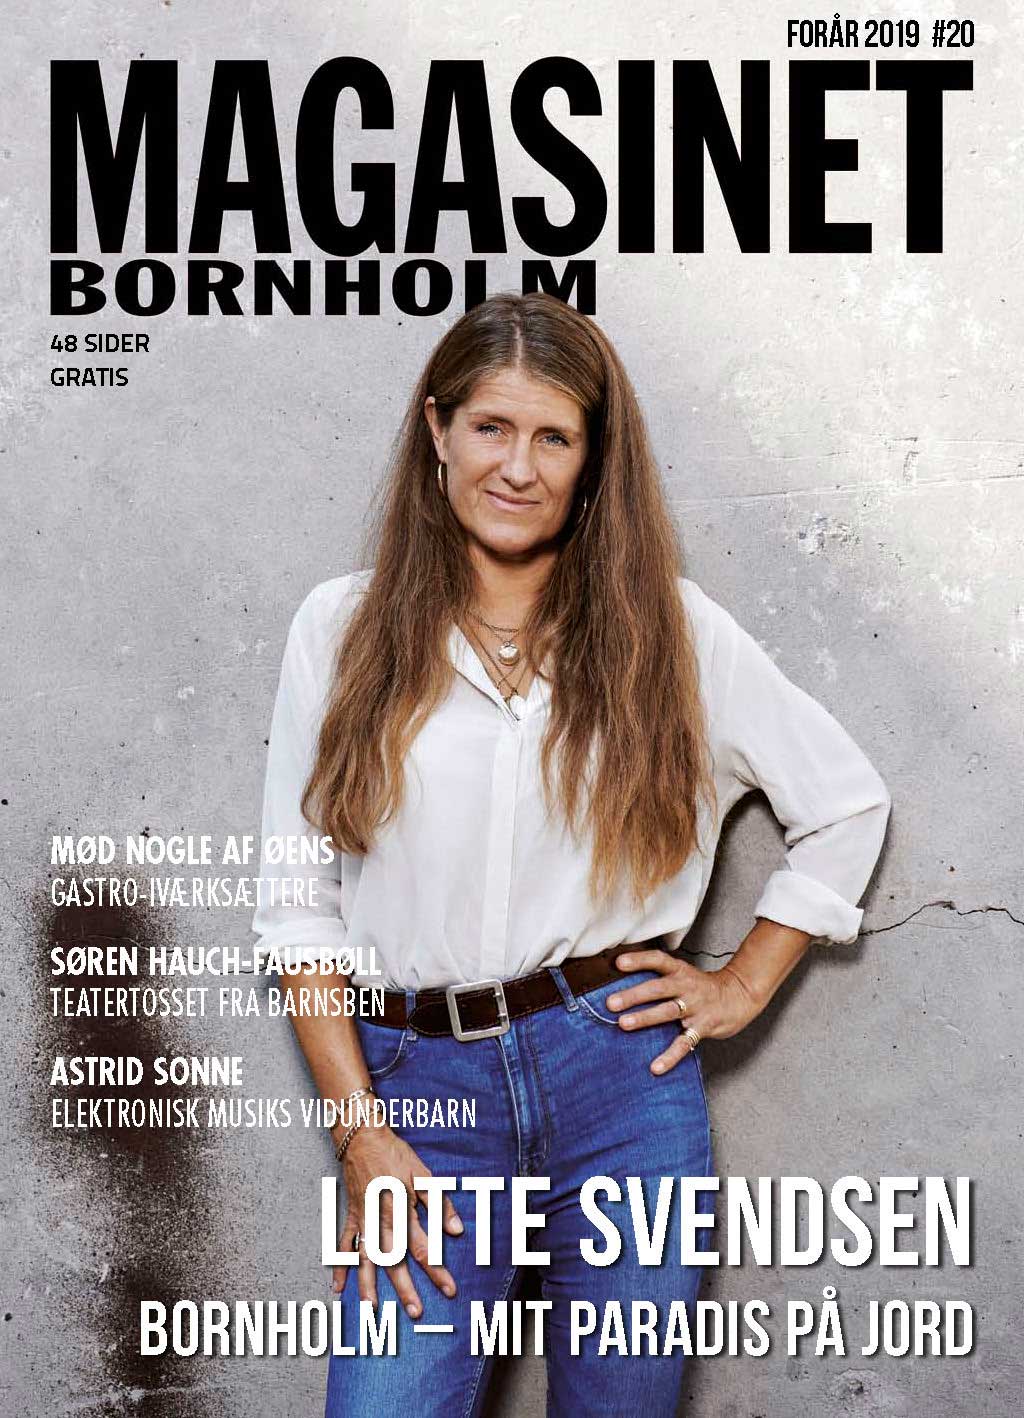 Magasinet Bornholm #20